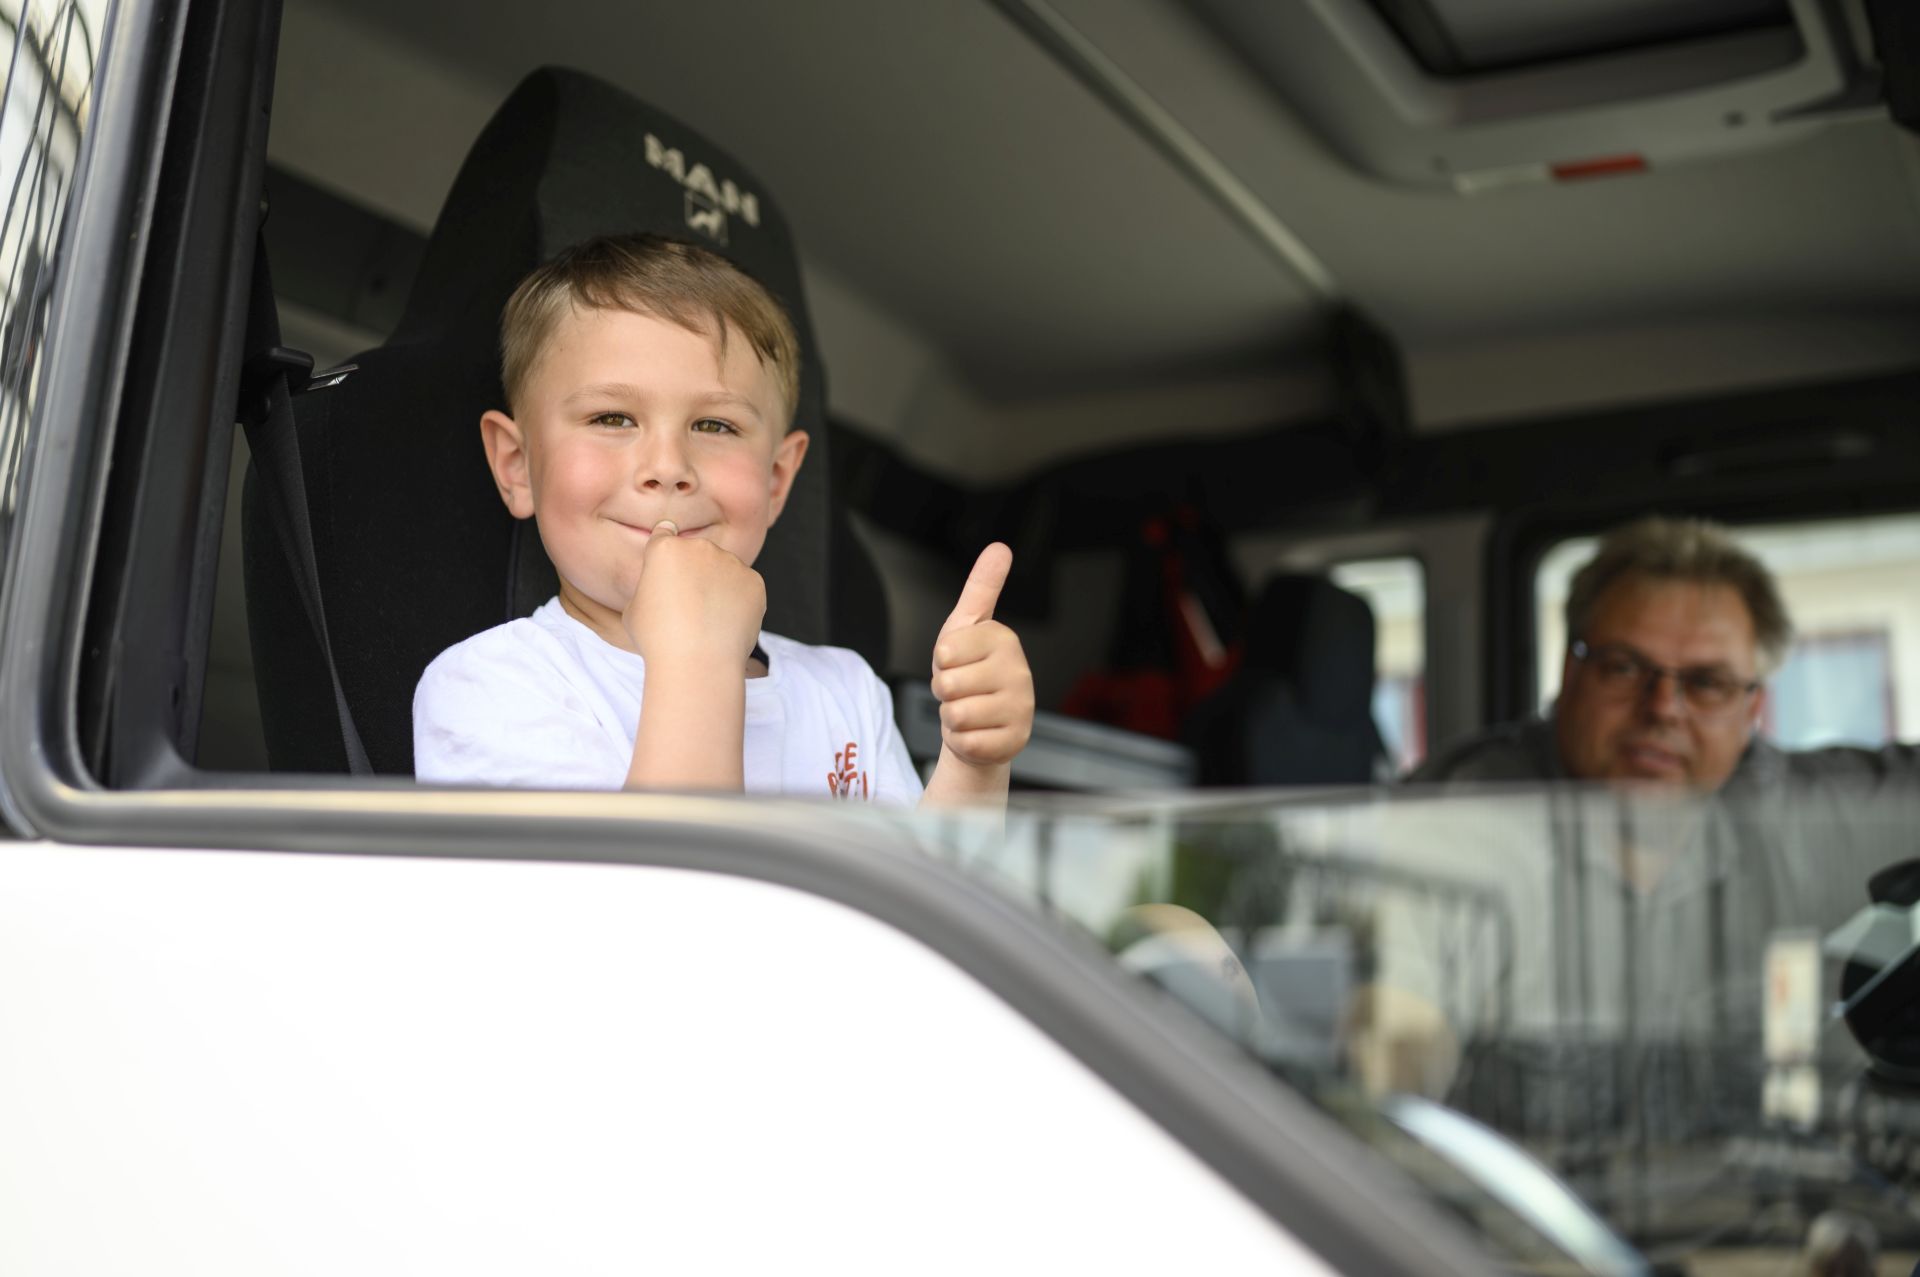 Ein lächelnder Junge mit einem weißen T-Shirt sitzt auf dem Fahrersitz eines Lastwagens und gibt mit seiner rechten Hand einen Daumen hoch. Im Hintergrund ist ein unscharfer Mann zu sehen, der mit im LKW sitzt.